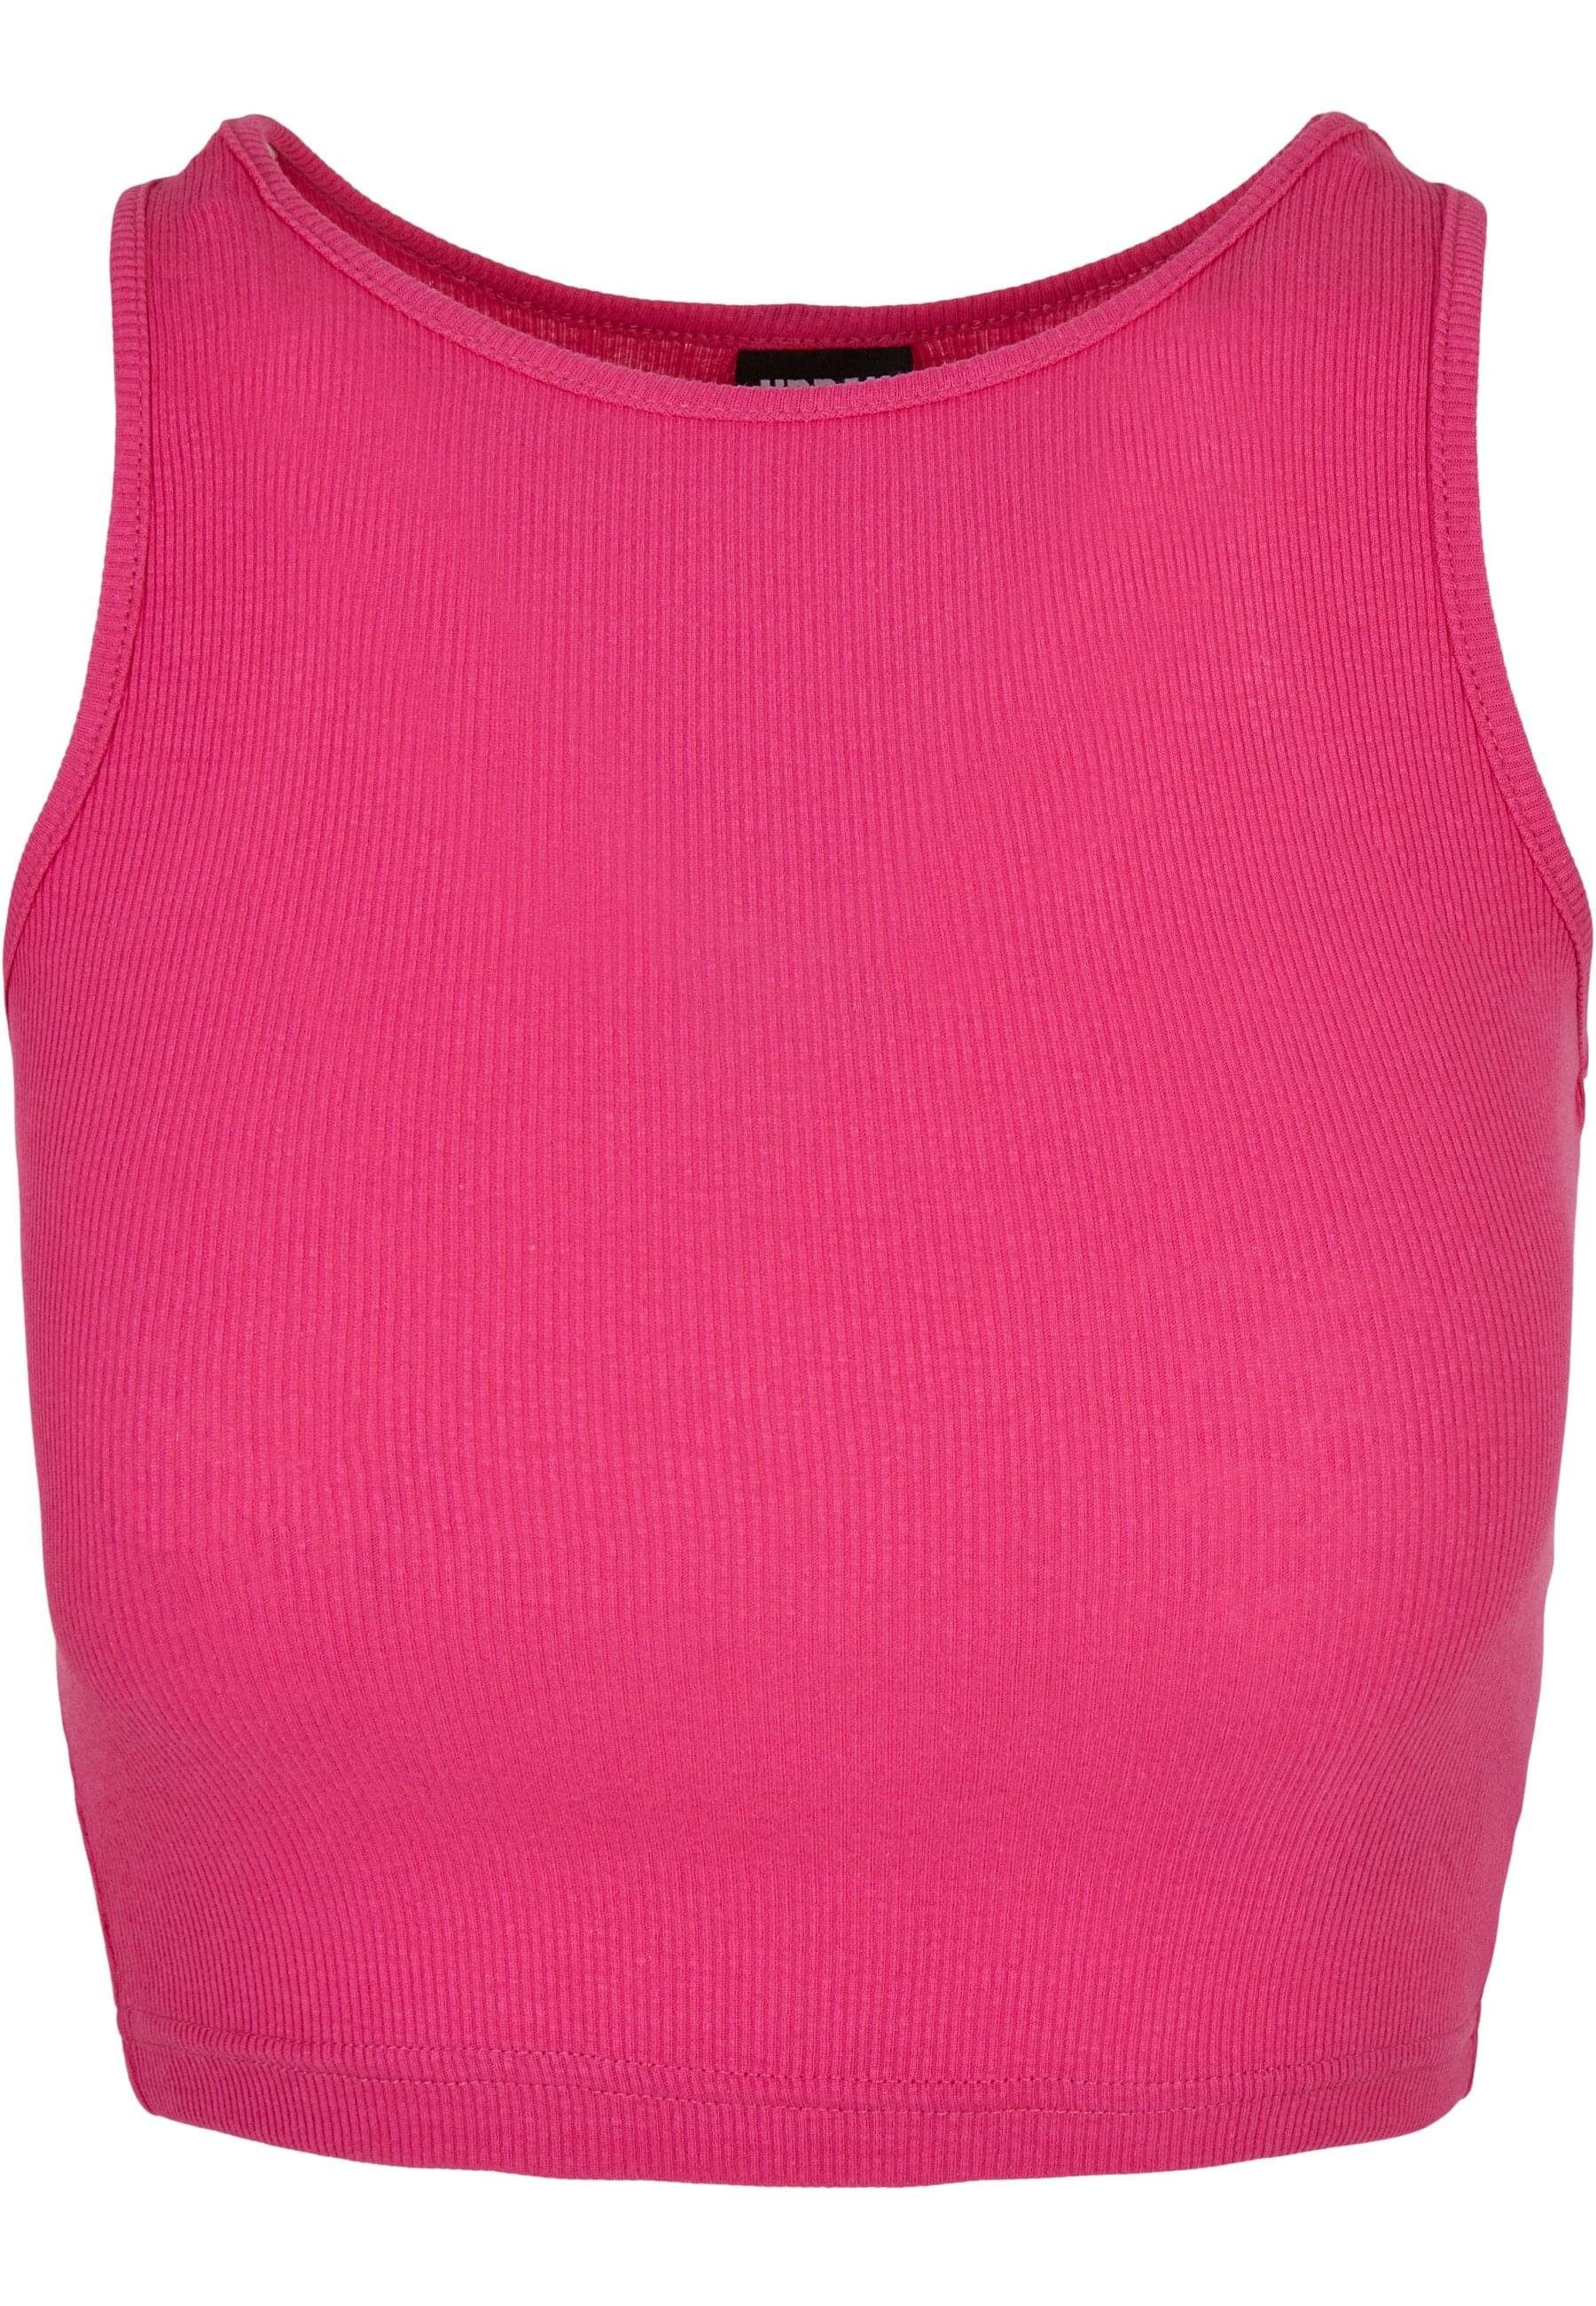 URBAN CLASSICS T-Shirt Damen Ladies Lace Up Cropped Top (1-tlg), Bietet  Bewegungsfreiheit und Belüftung für den Oberkörper